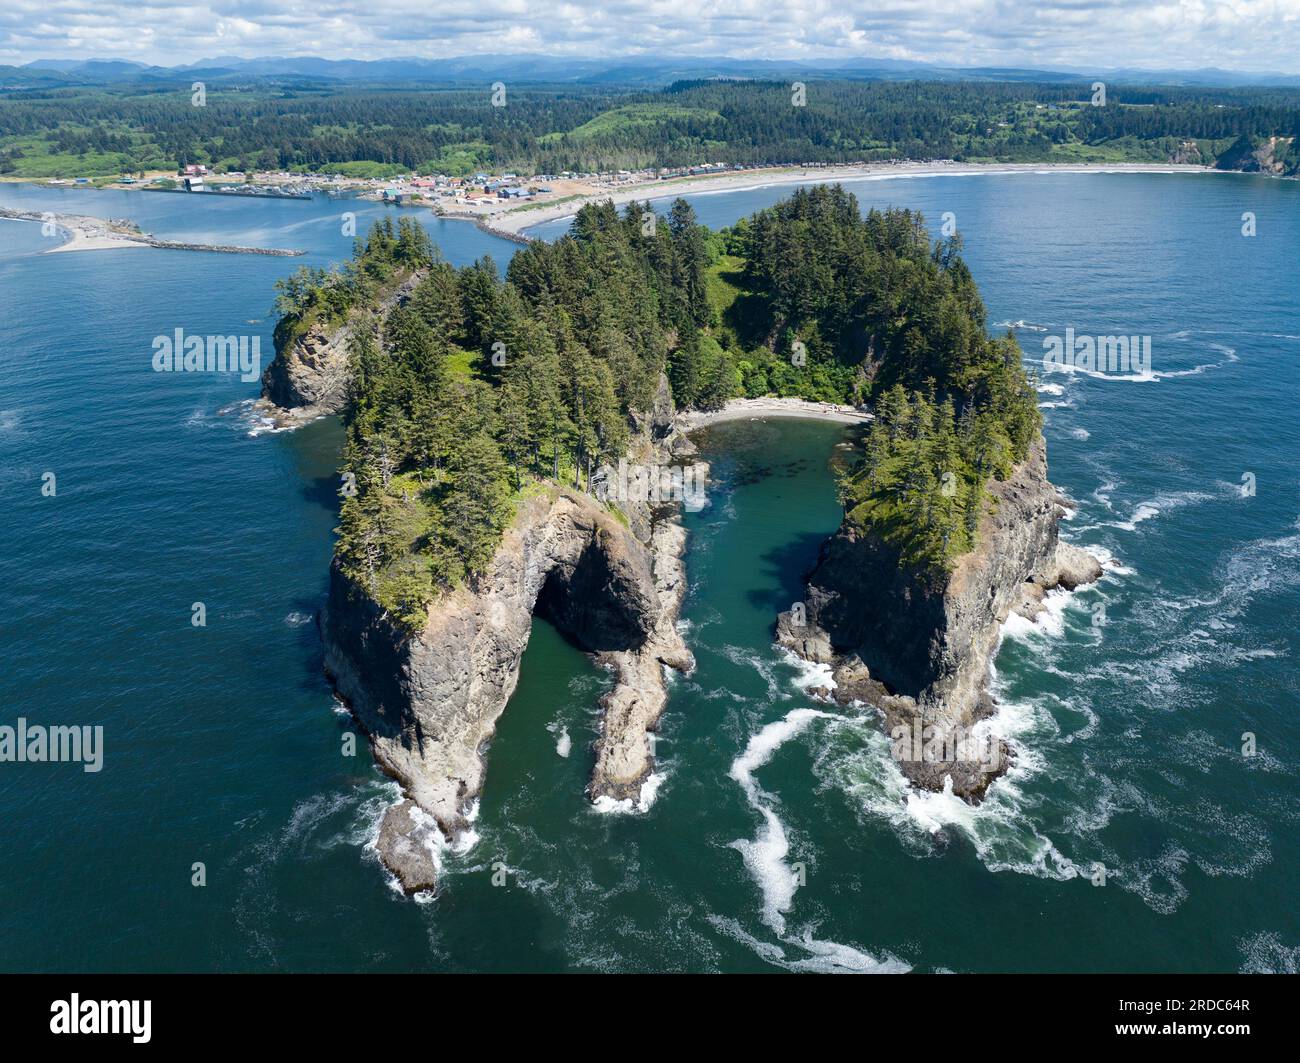 Le rocce marine si trovano a ridosso della scenografica Rialto Beach nell'Olympic National Park, Washington. Questa zona si trova alla foce del fiume Quillayute. Foto Stock